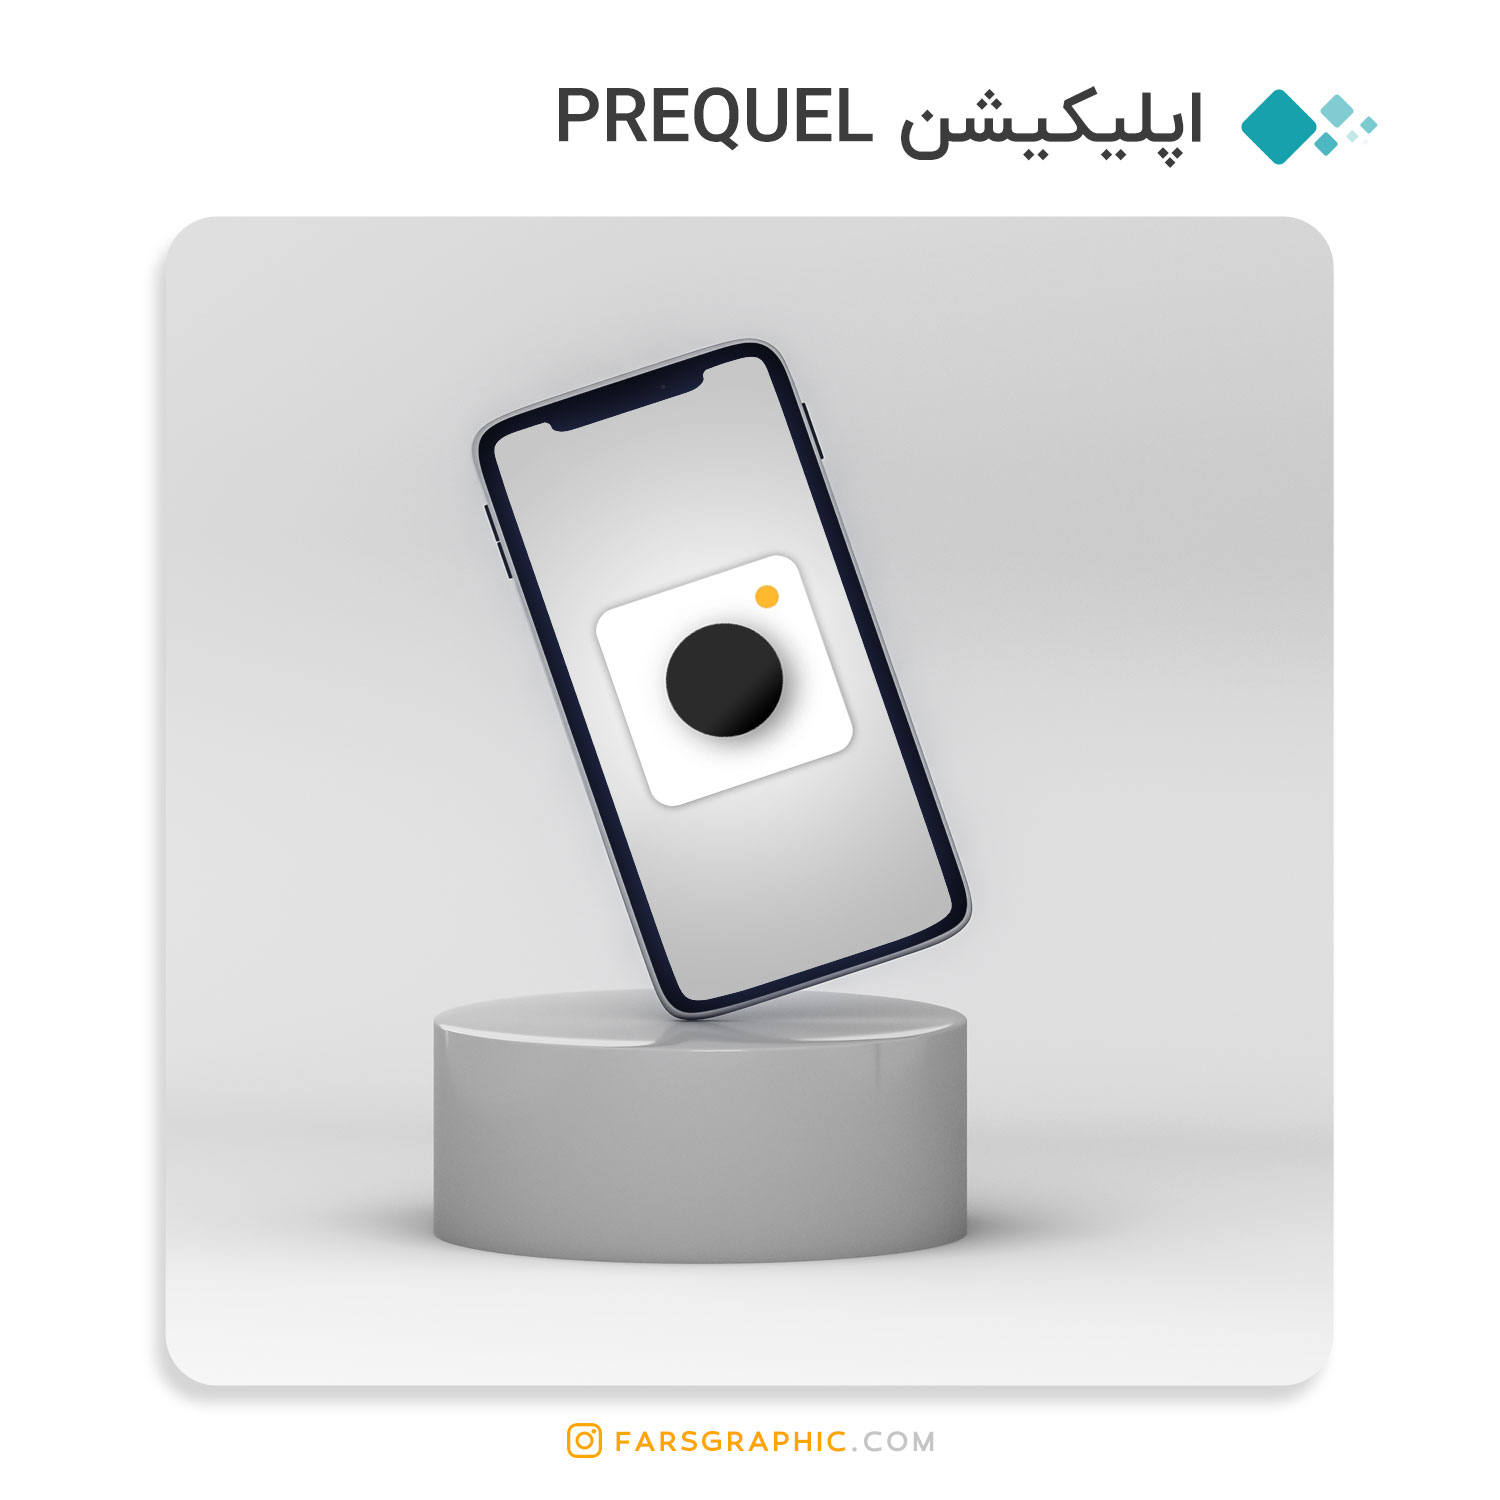 اپلیکیشن PREQUEL App